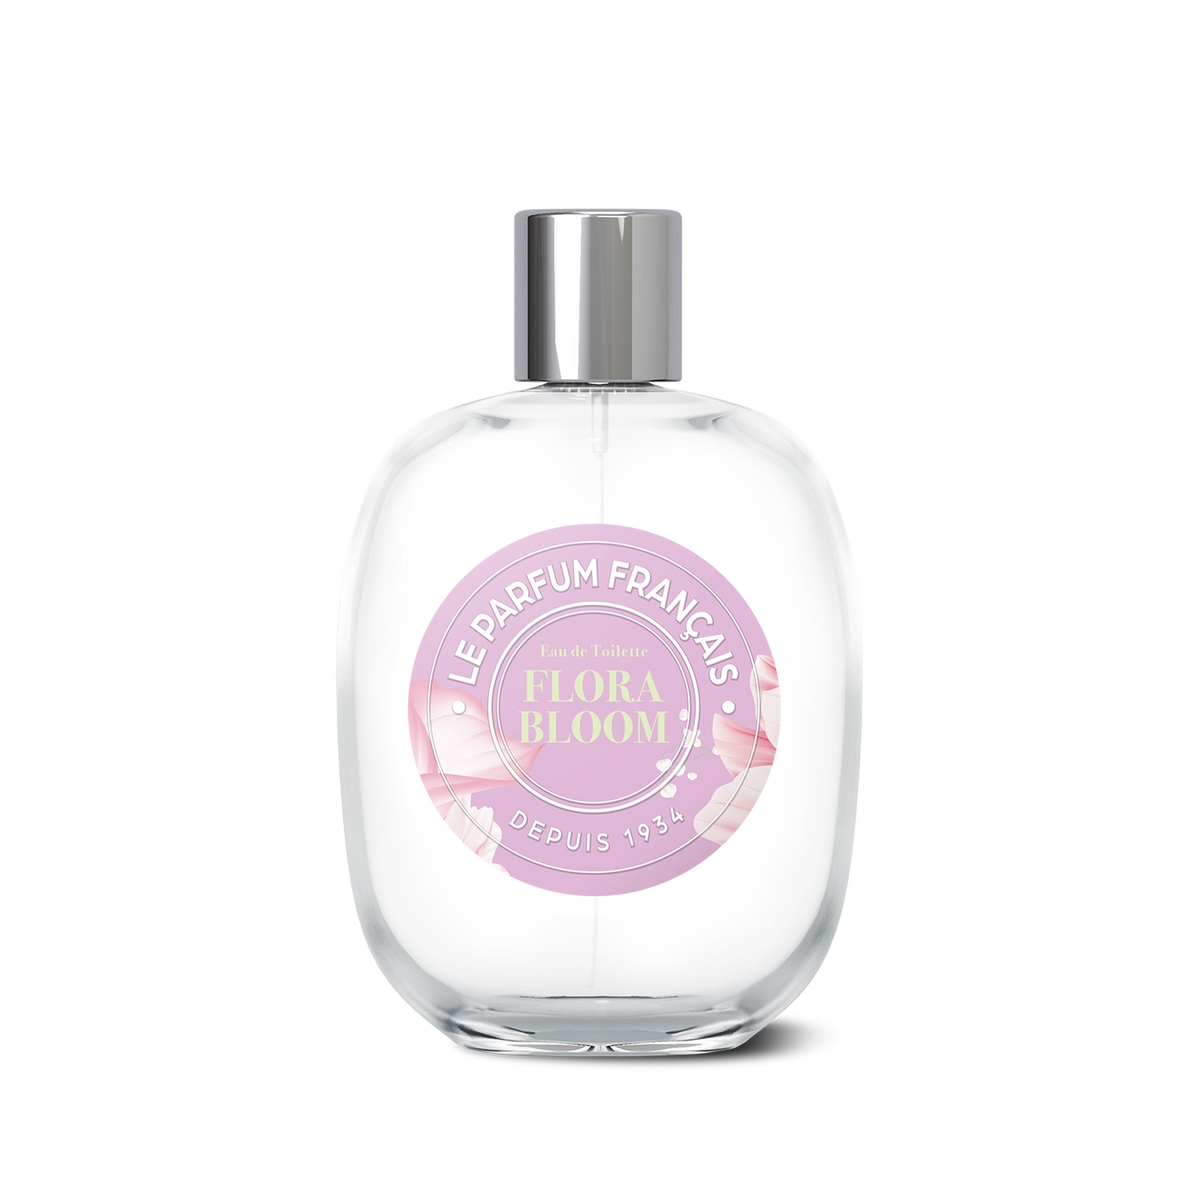 A clear perfume bottle with a pink and silver label that reads "Le Parfum Français Flora Bloom Eau de Toilette, depuis 1923" exudes timeless charm. The bottle is produced by Le Parfum Français.